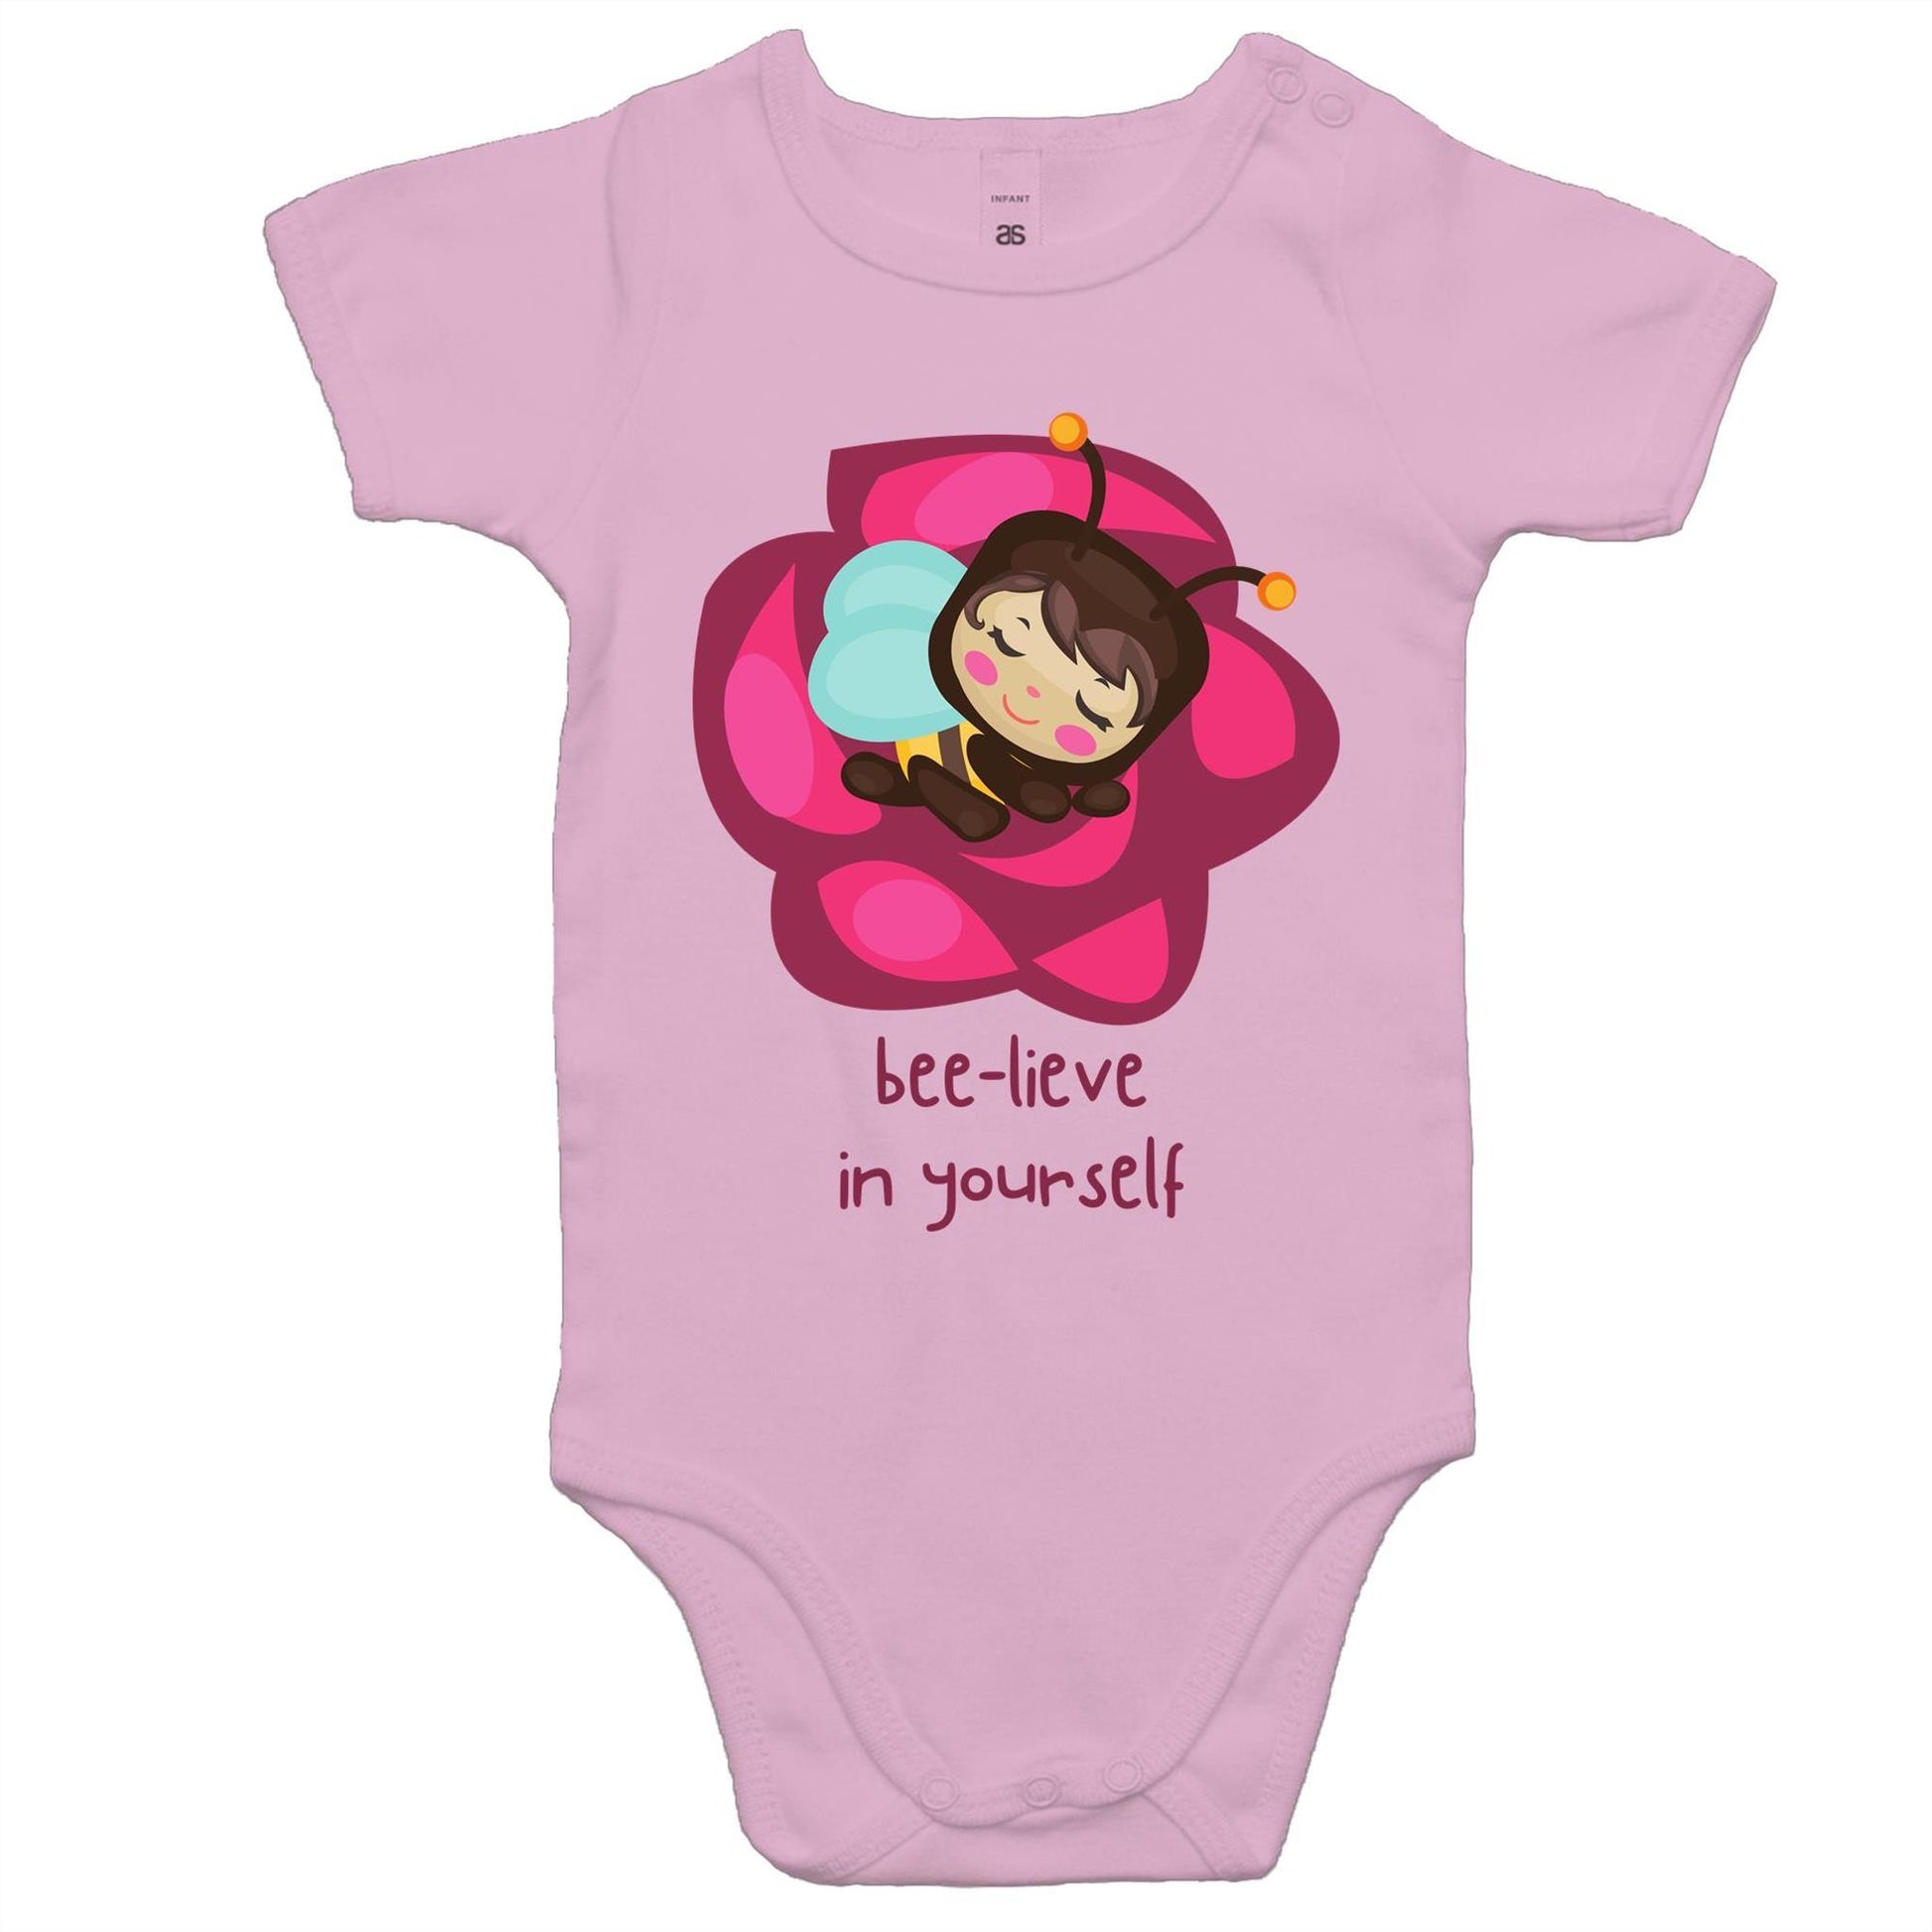 Bee-lieve In Yourself - Baby Bodysuit Pink Baby Bodysuit kids